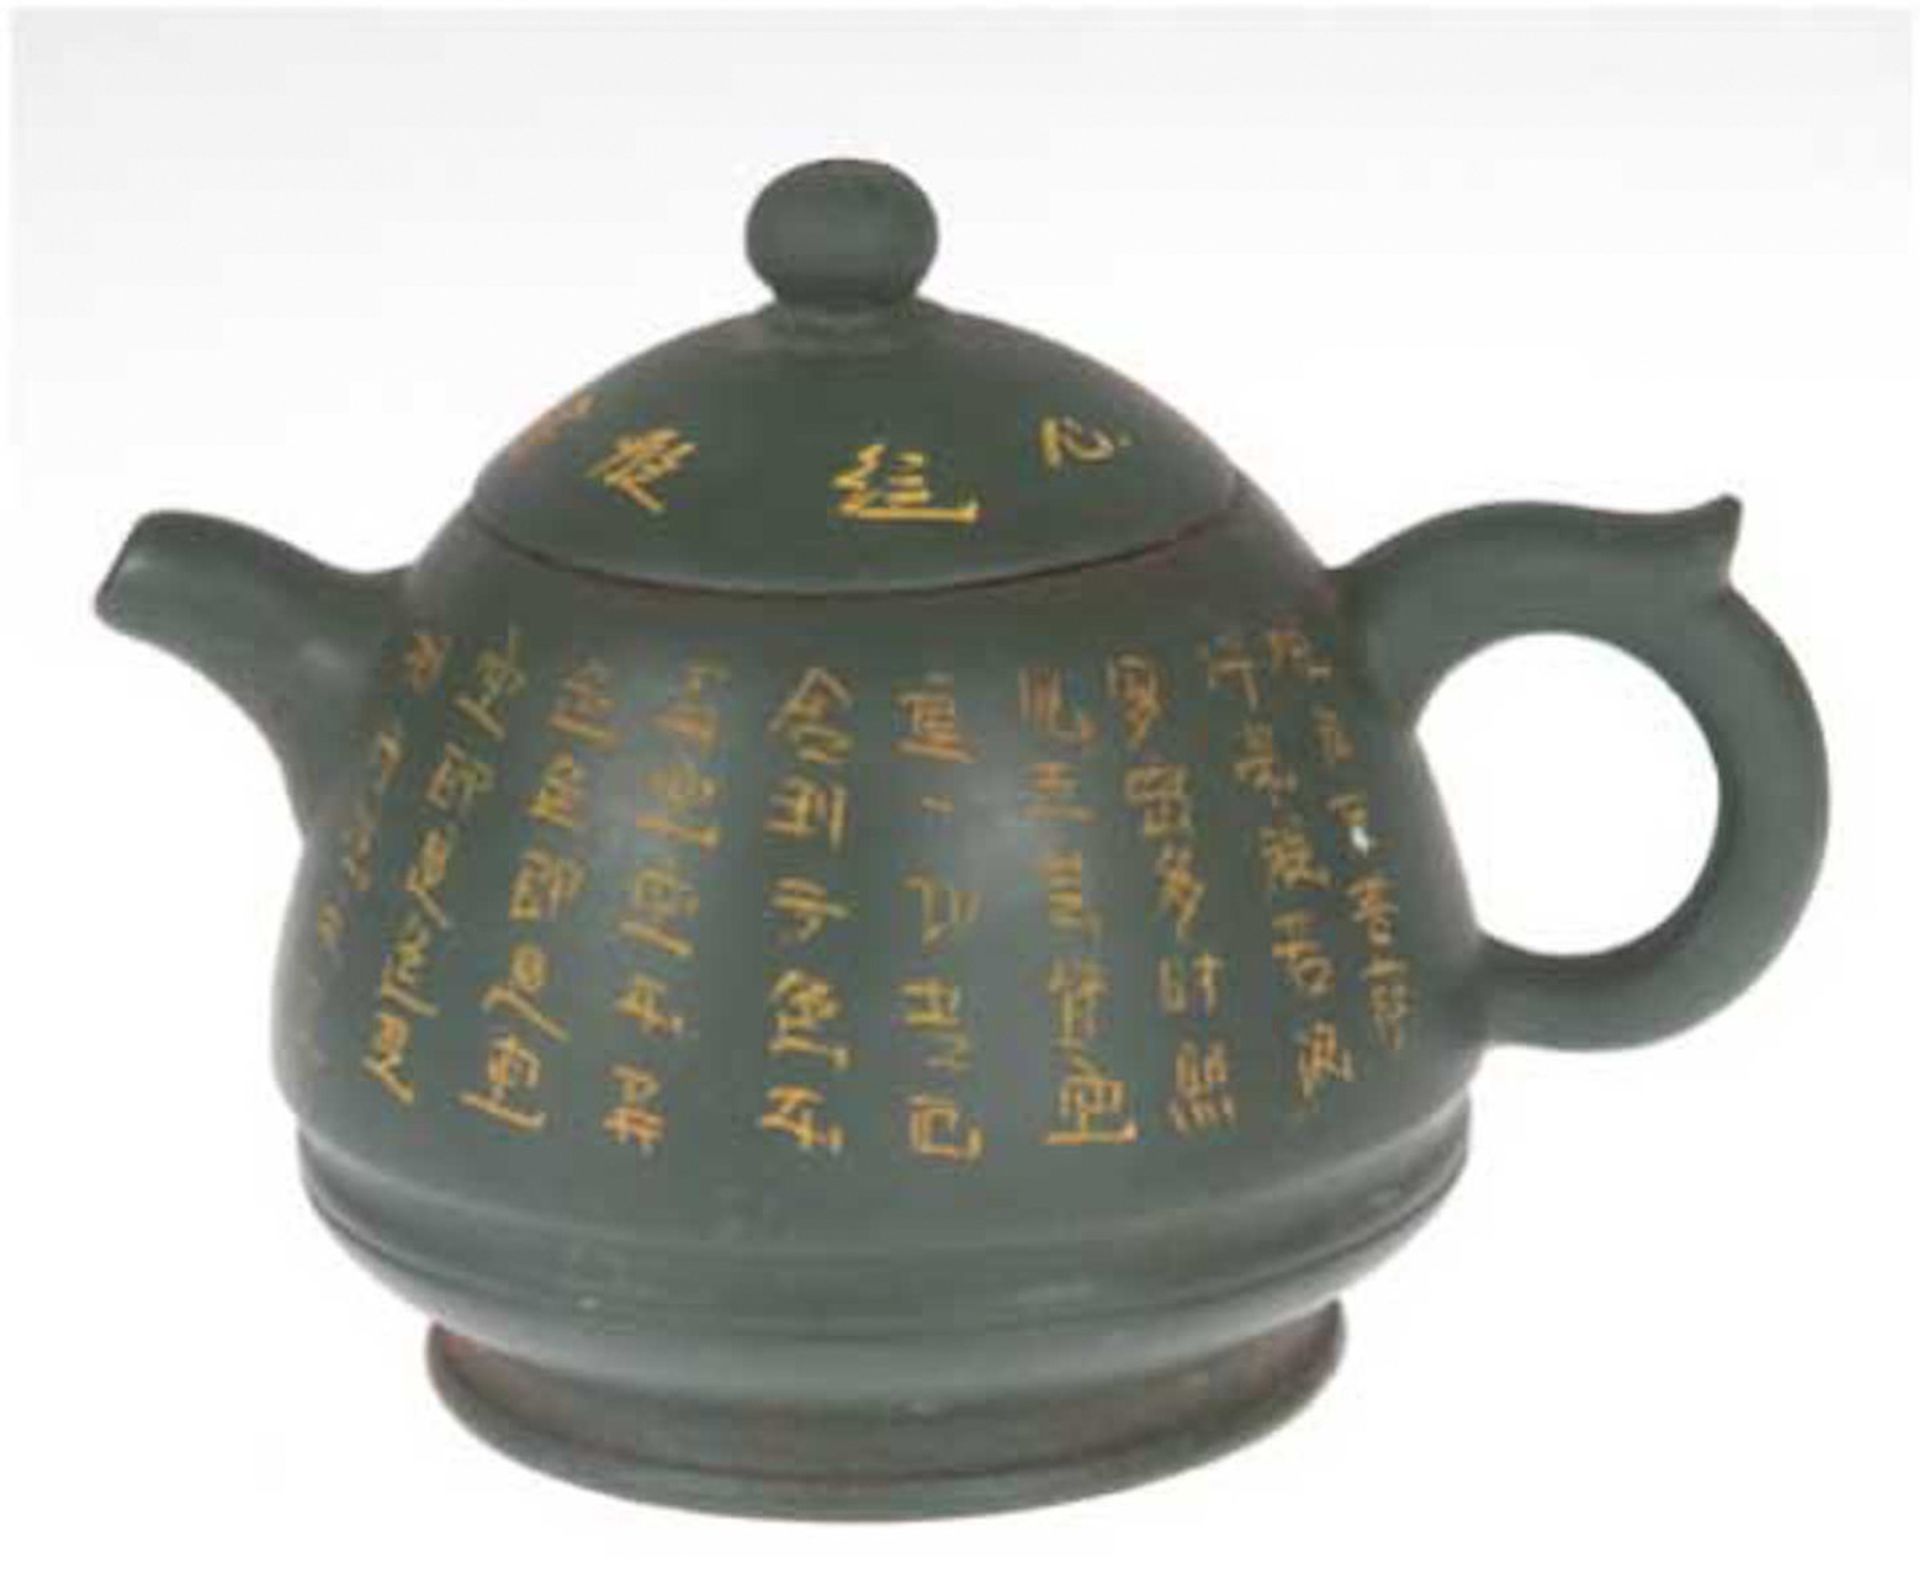 Kanne, China, Keramik, gemarkt, grüner Fond mit umlaufenden chinesischen Schriftzeichen,H. 8